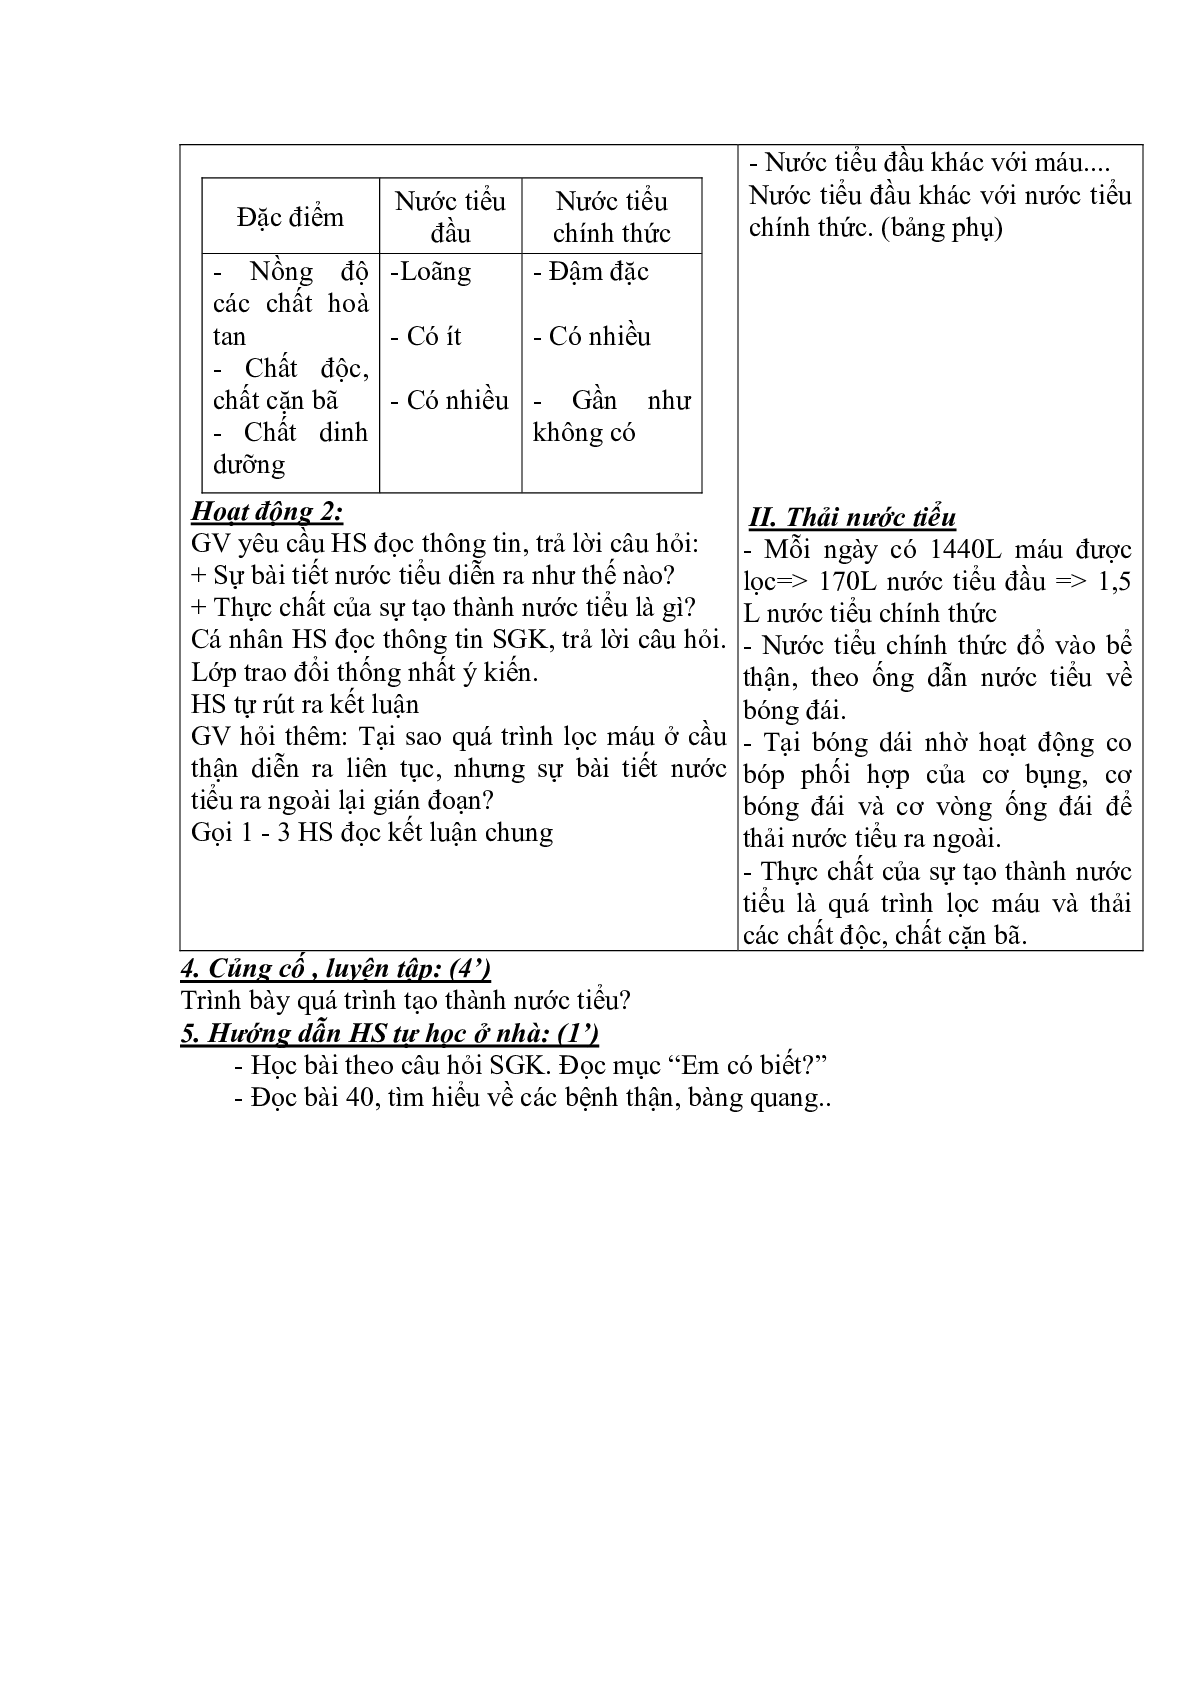 Giáo án Sinh học 8 Bài 39: Bài tiết nước tiểu mới, chuẩn nhất (trang 2)